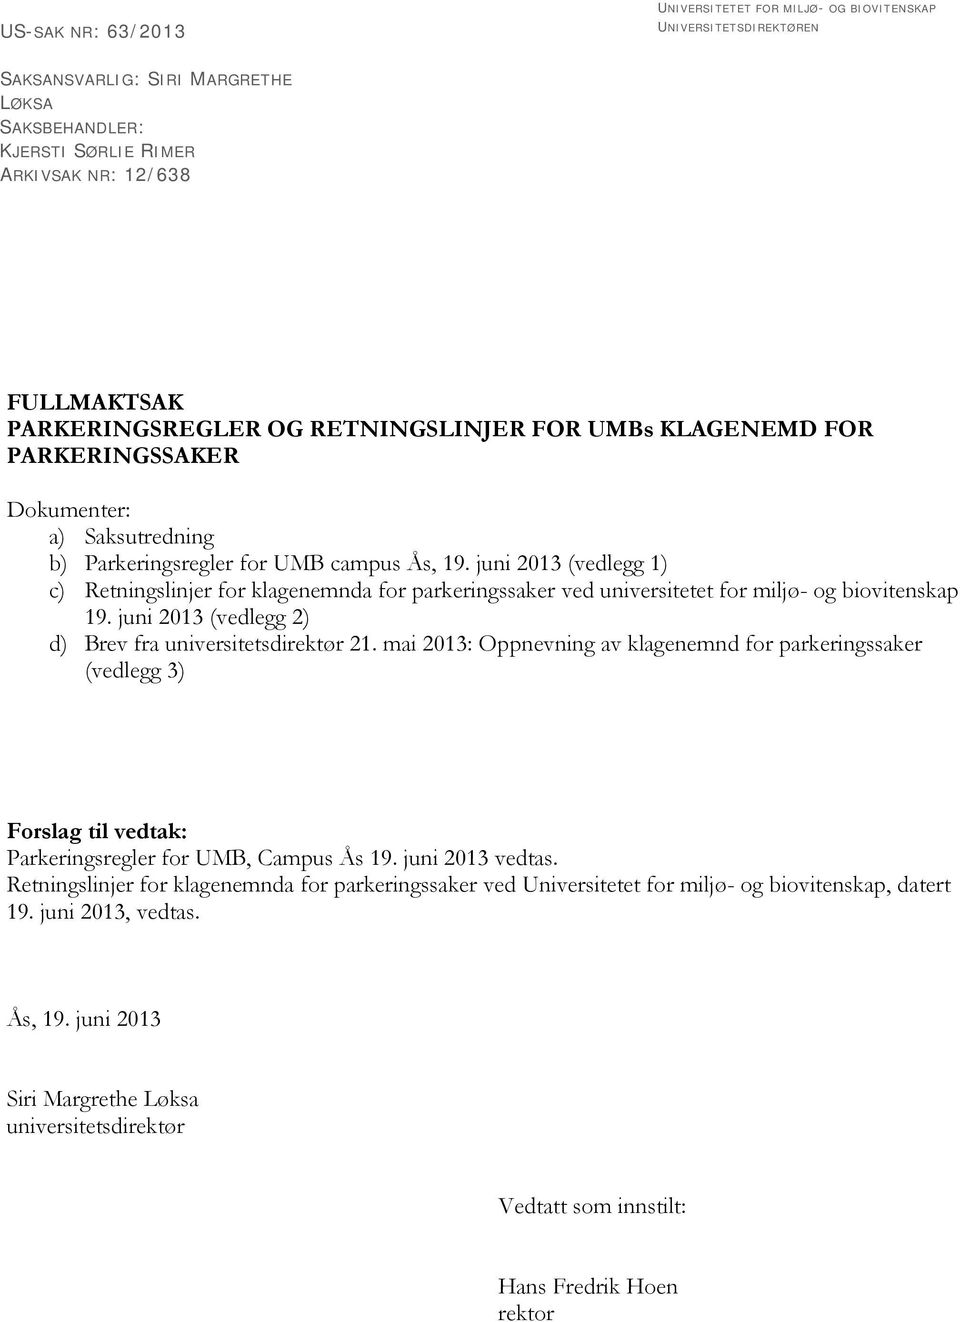 juni 2013 (vedlegg 1) c) Retningslinjer for klagenemnda for parkeringssaker ved universitetet for miljø- og biovitenskap 19. juni 2013 (vedlegg 2) d) Brev fra universitetsdirektør 21.